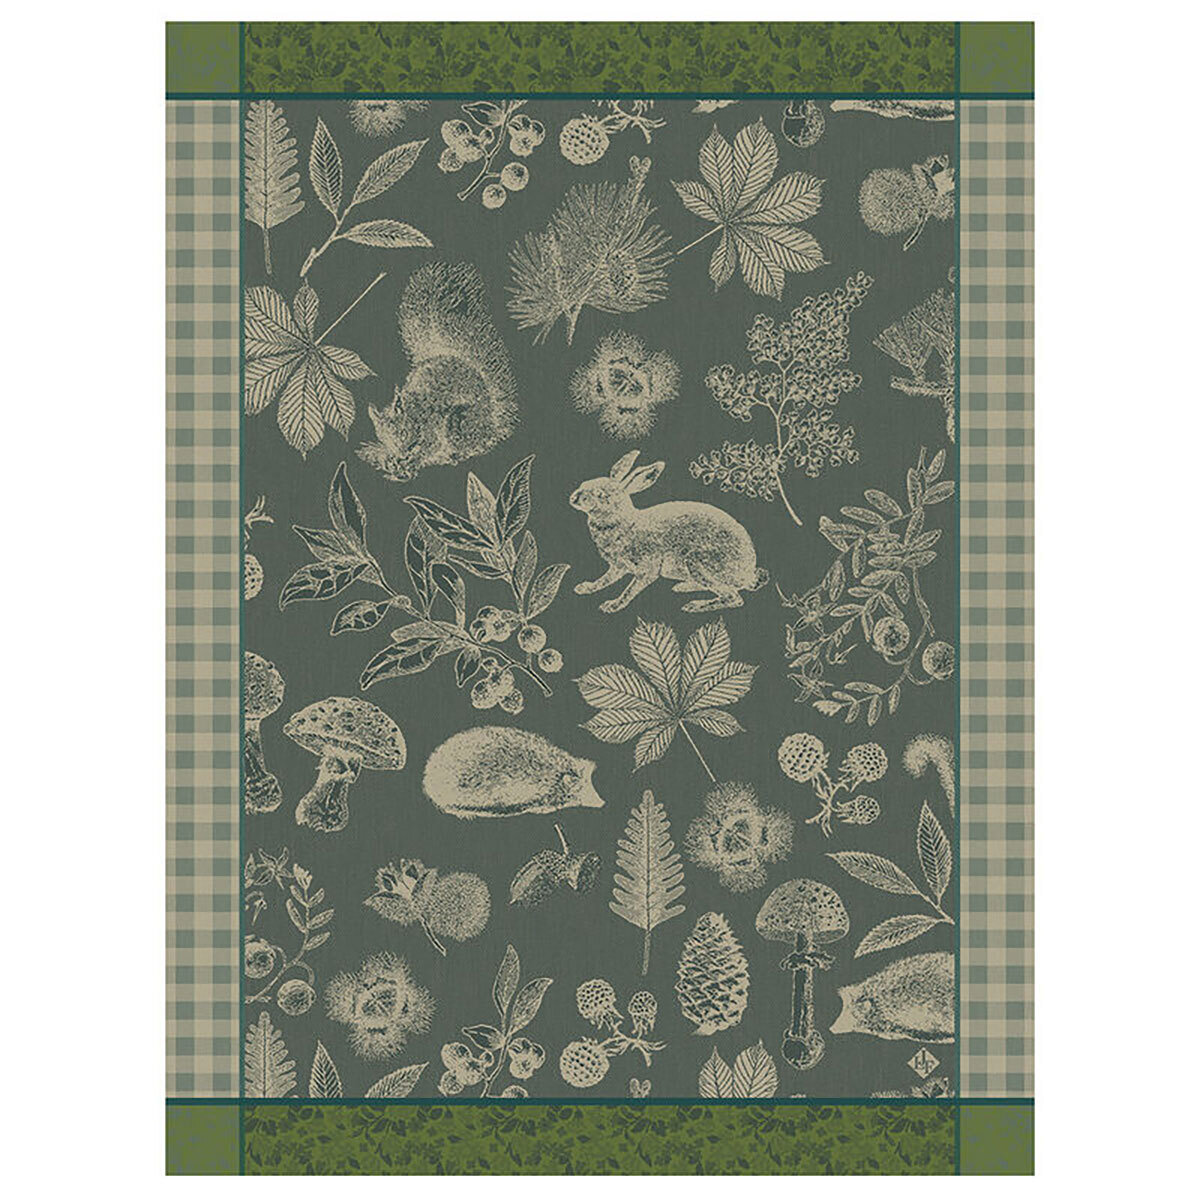 Le Jacquard Francais Tea Towel Dans Bois Tableau Green 100% Cotton 24 x 31 Inch 28121 Set of 4